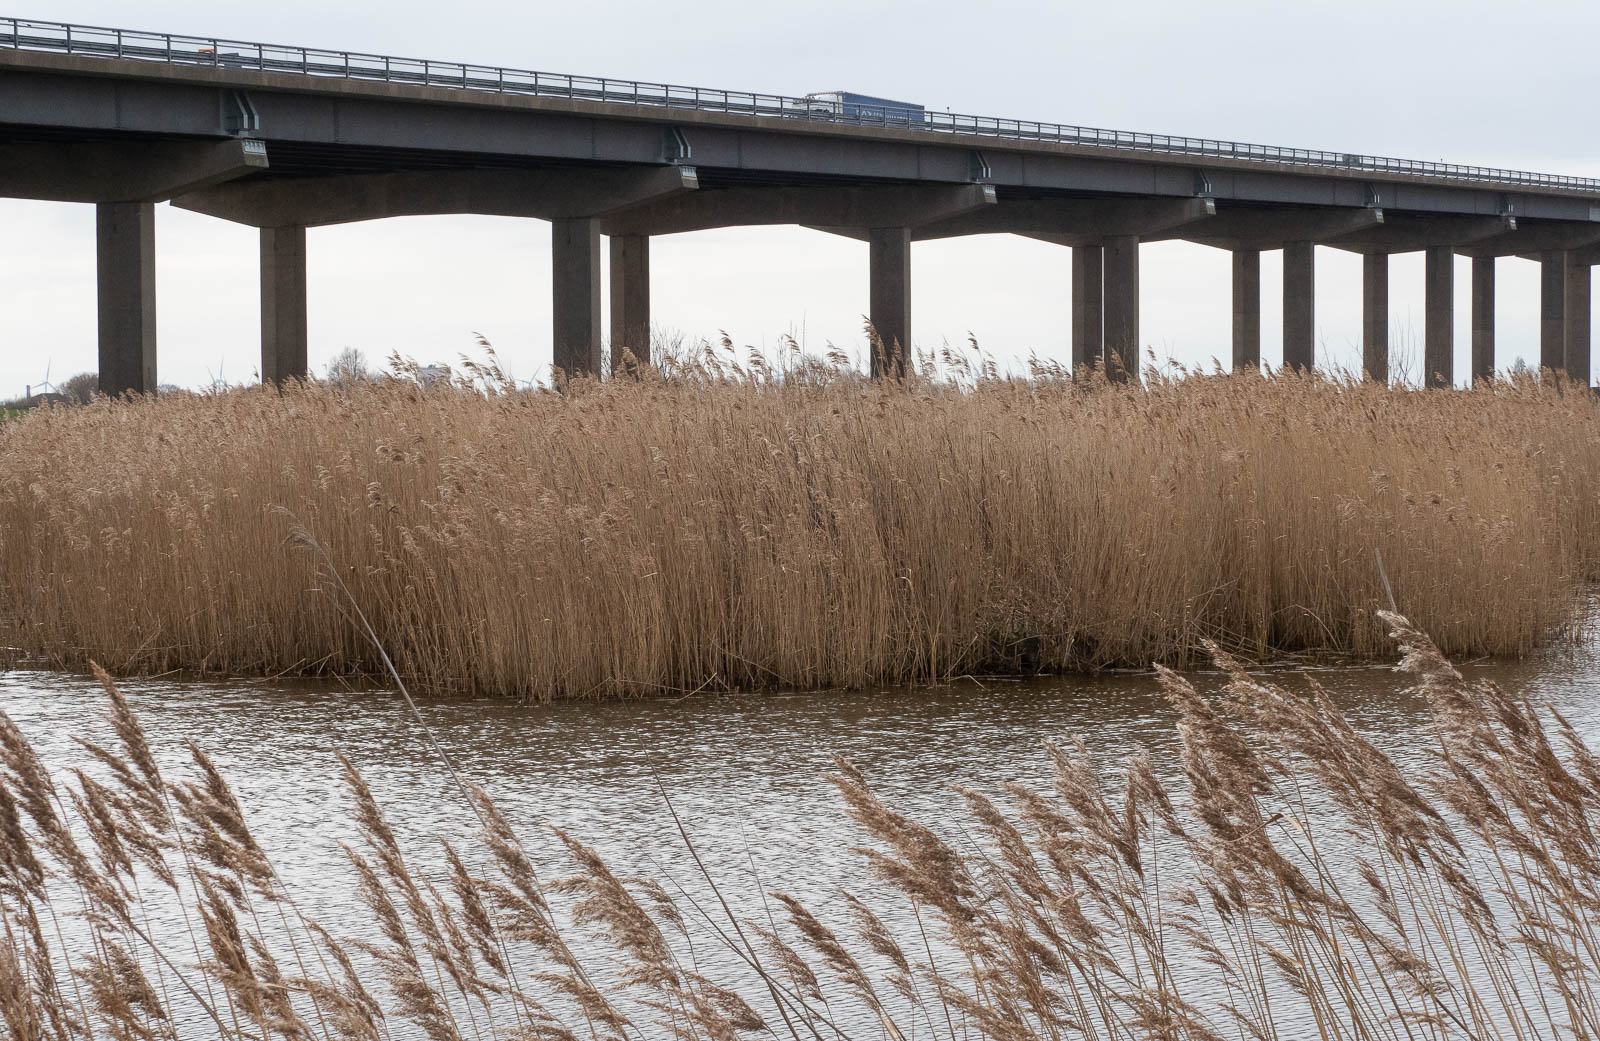 Reeds water reeds bridge, Mike Darley